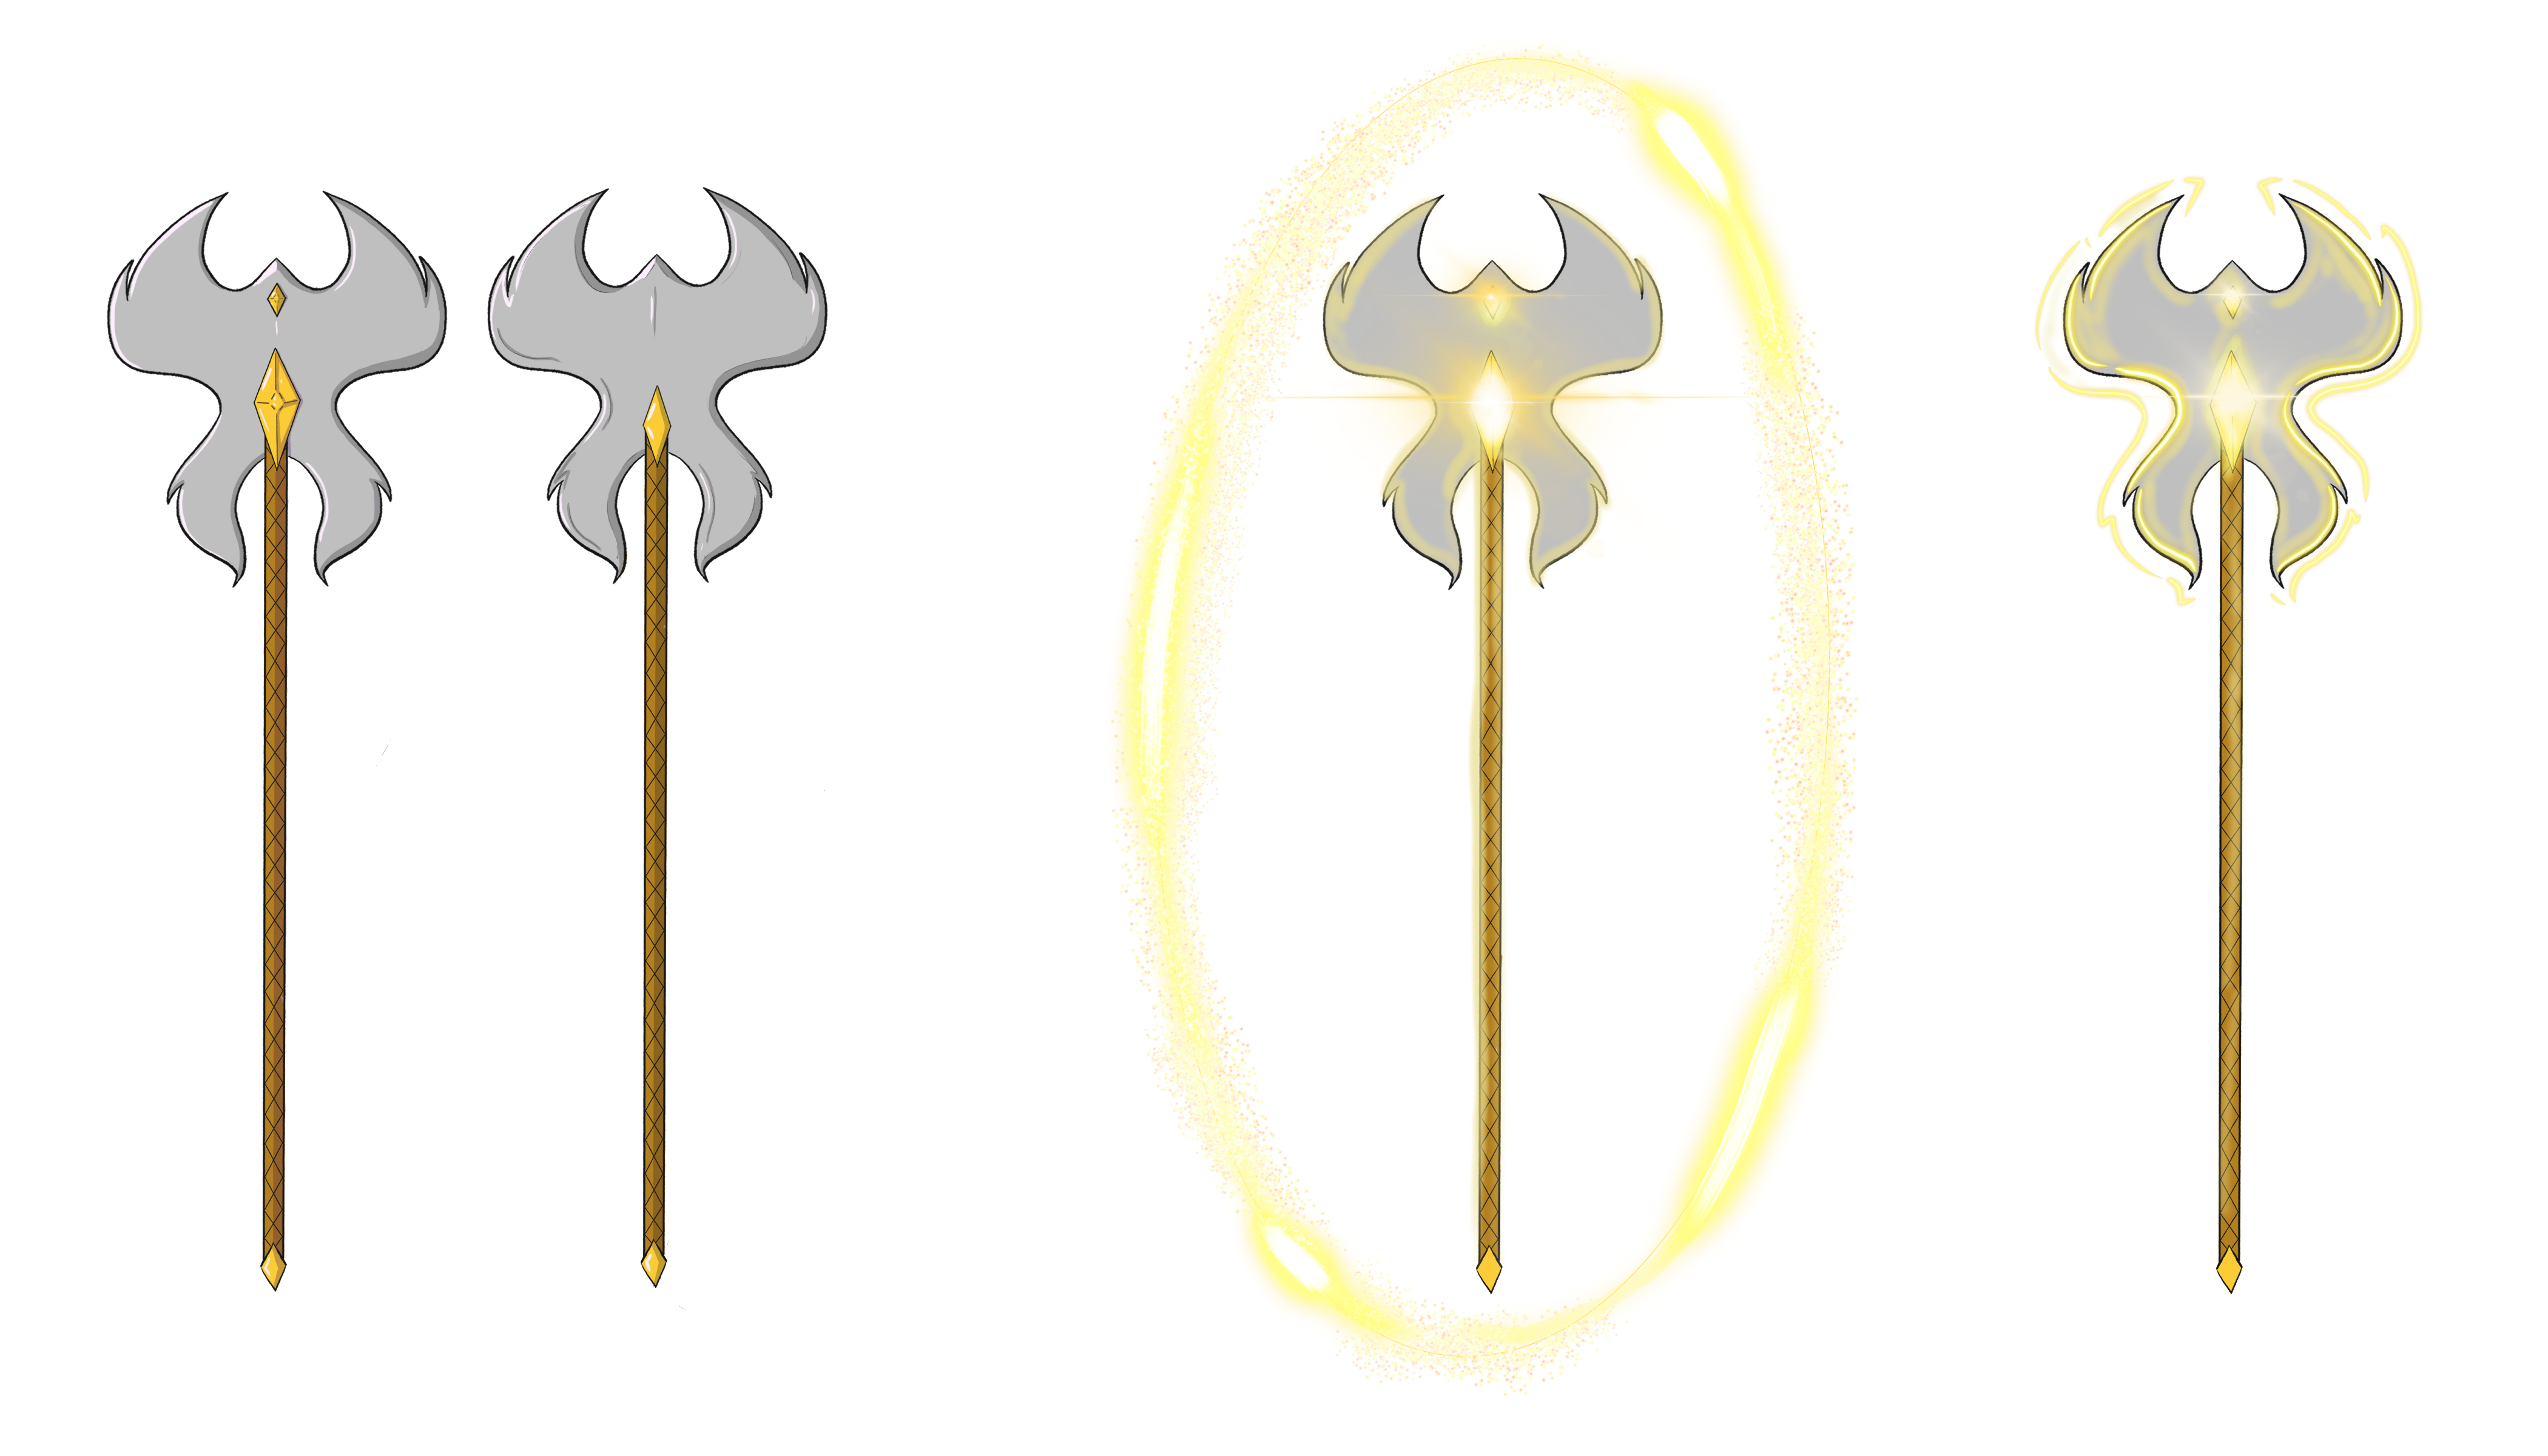 Kali axe weapon illustration